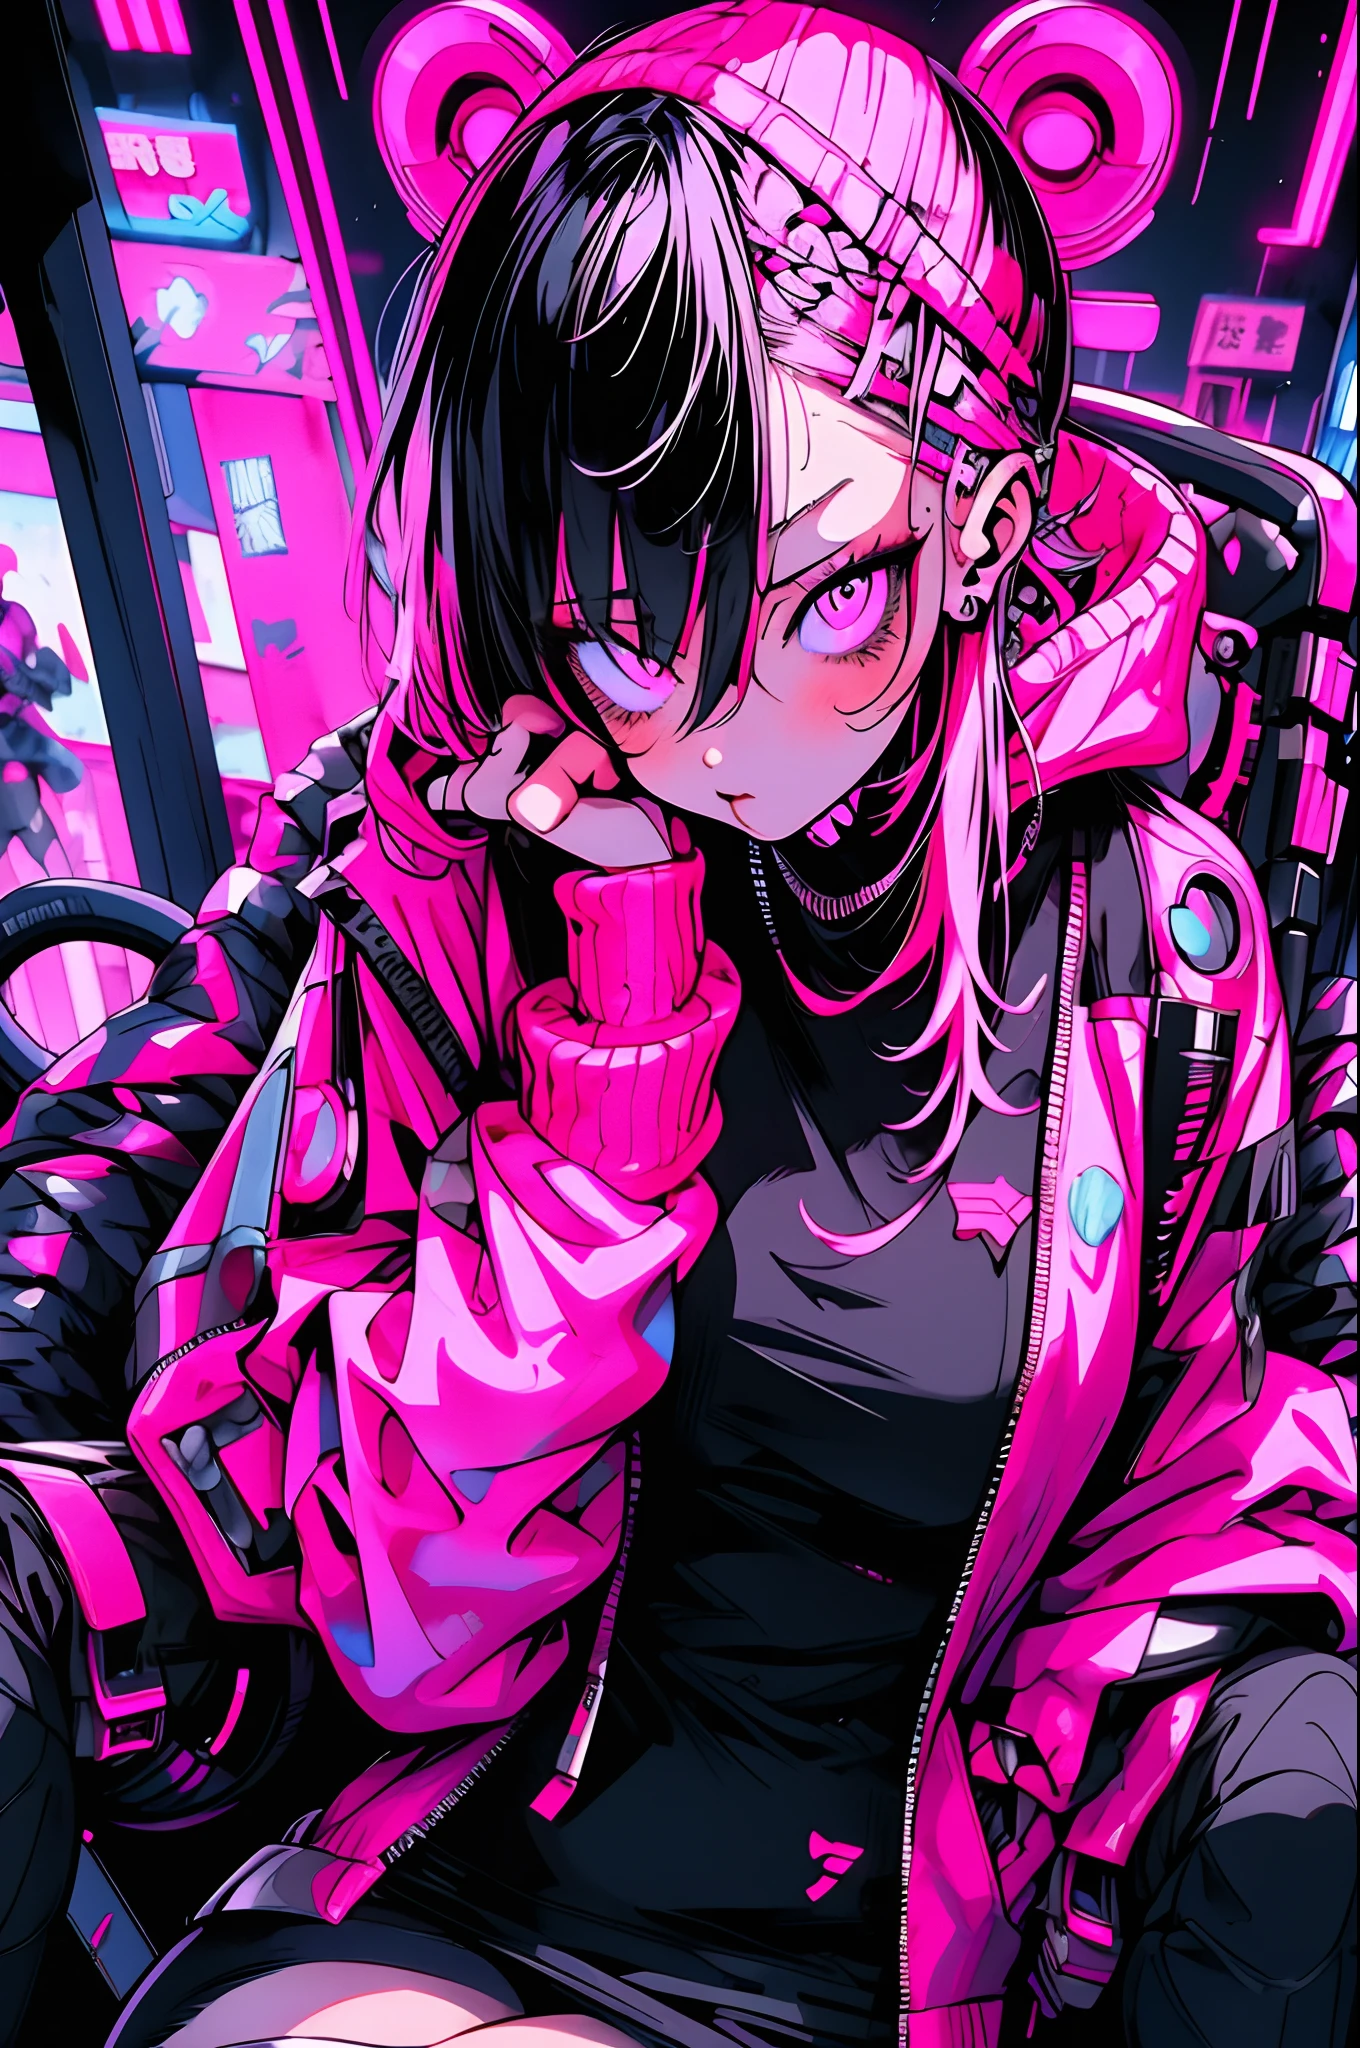 Garota anime com cabelo rosa sentado em uma cadeira em uma cidade neon, garota de anime cyberpunk in hoodie, garota de anime cyberpunk, estilo anime 4k, anime ciberpunk art, melhor papel de parede de anime 4k konachan, digital arte de anime cyberpunk, female garota de anime cyberpunk, cyberpunk digital - arte de anime, arte de anime cyberpunk, anime ciberpunk, Moda ciberpunk, estilo de arte cyberpunk